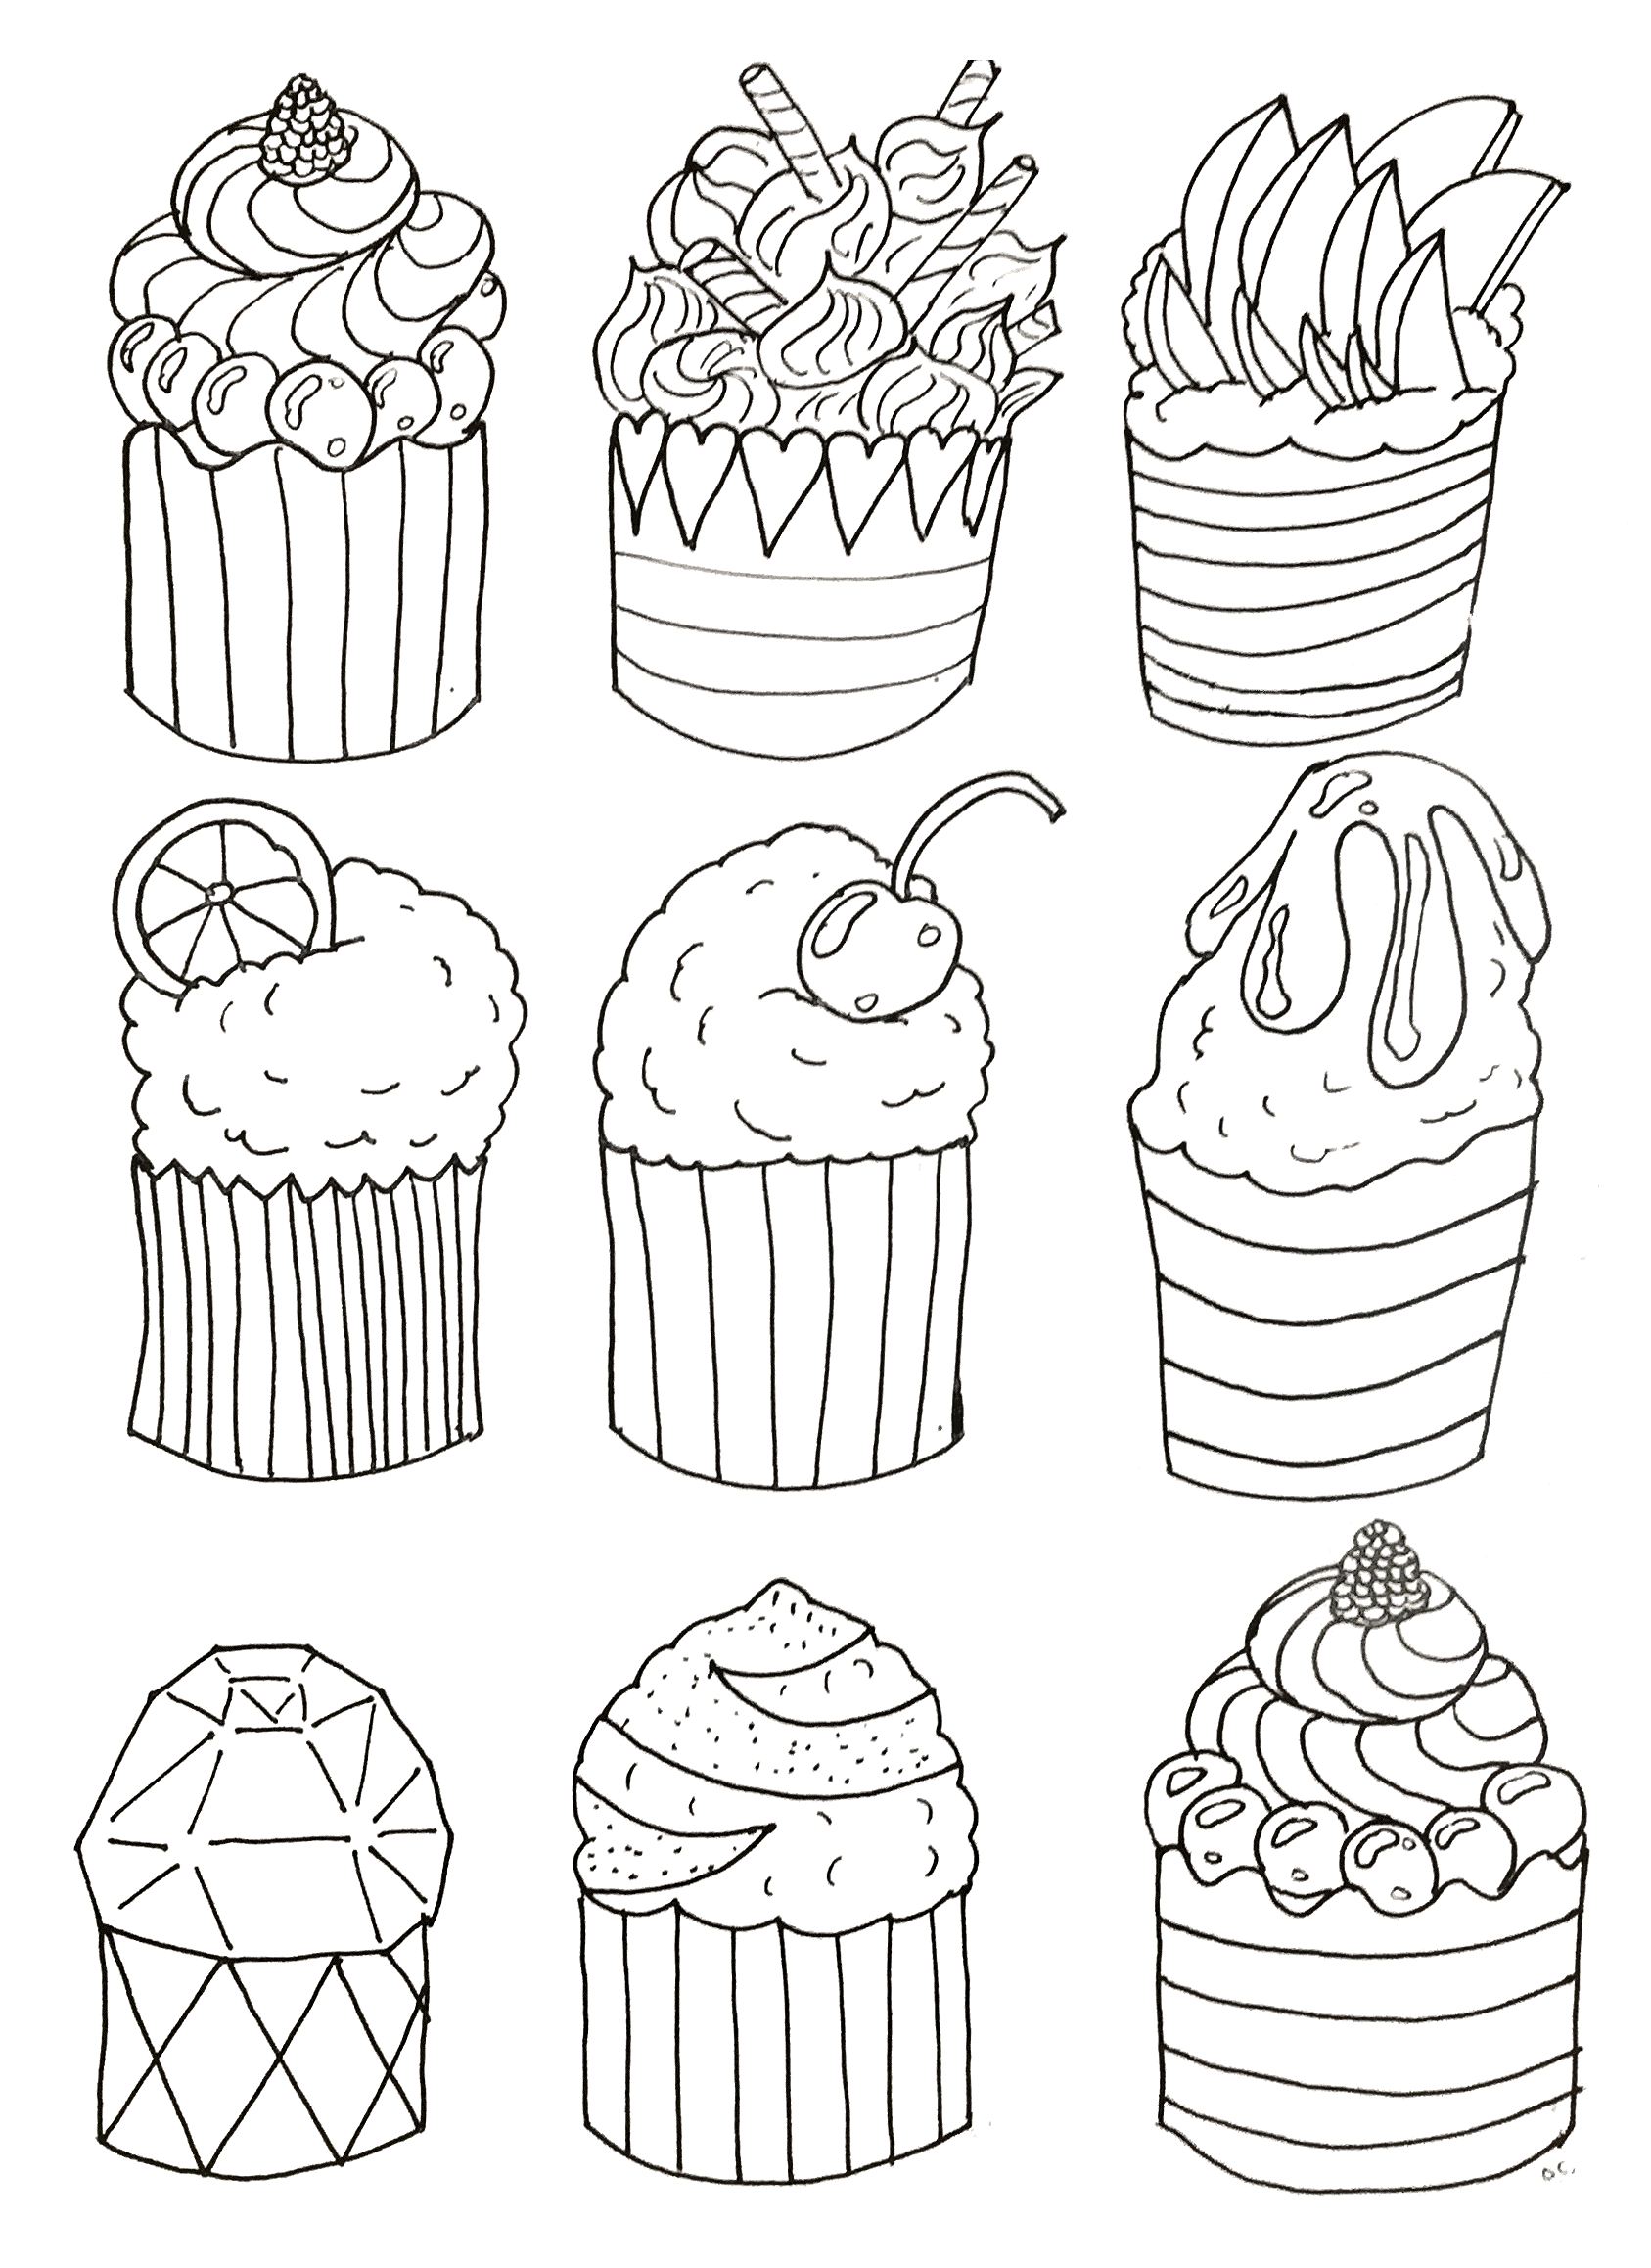 Disegni da colorare per adulti : Cup Cakes - 18